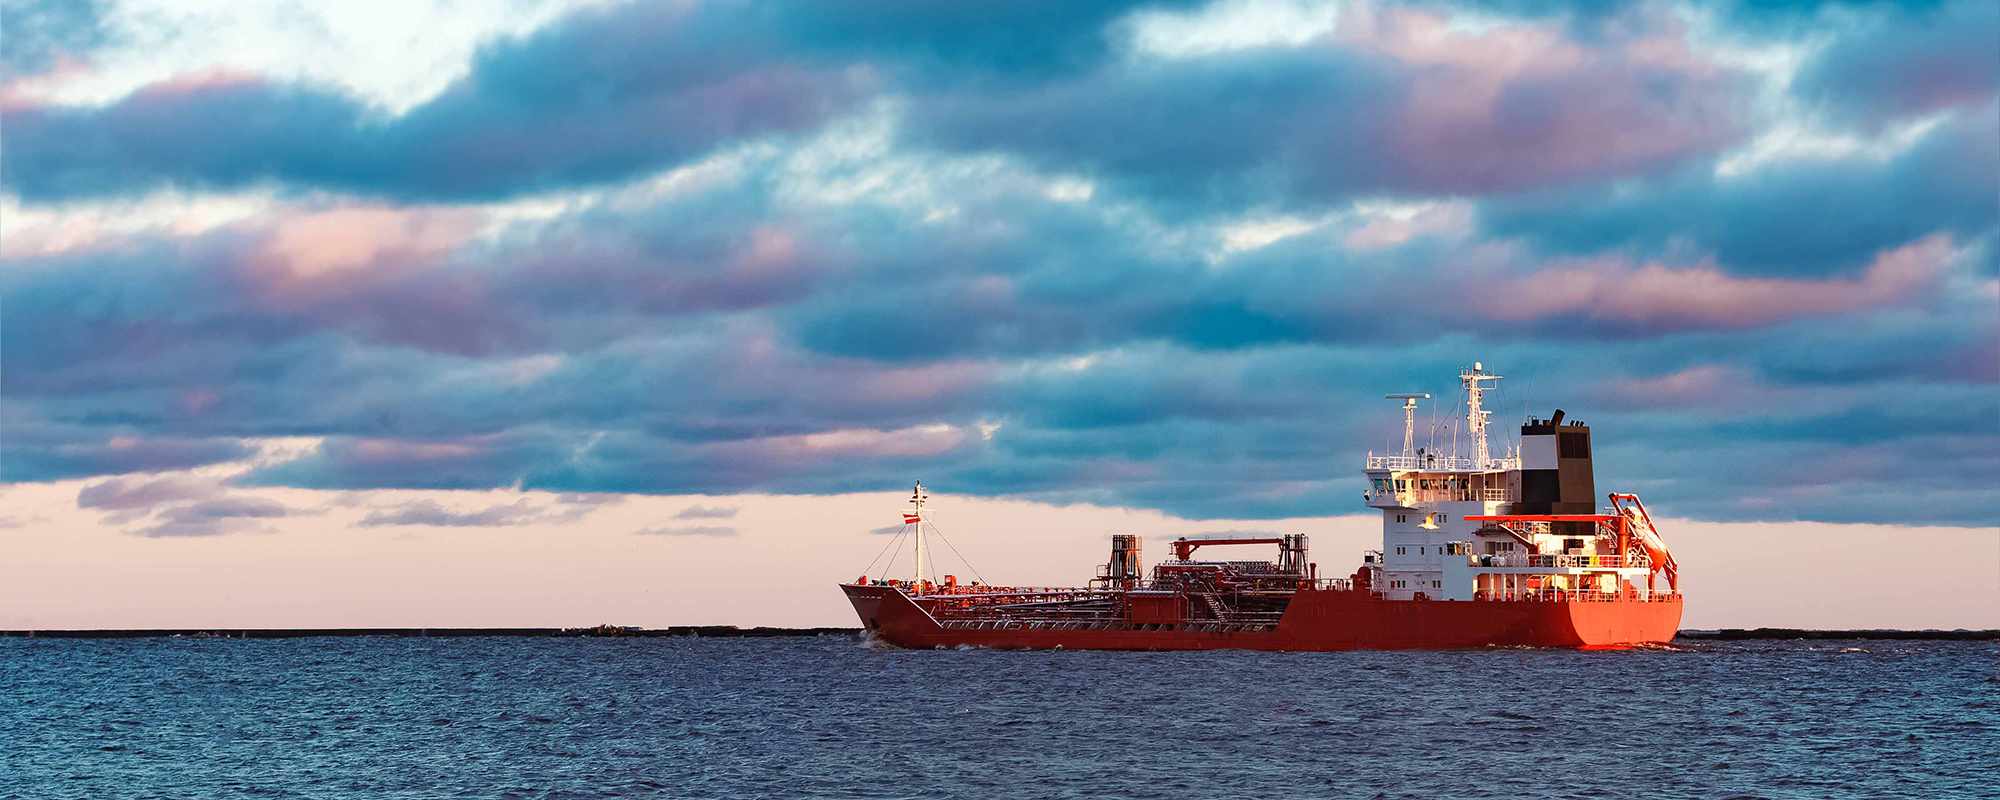 Red oil tanker-1